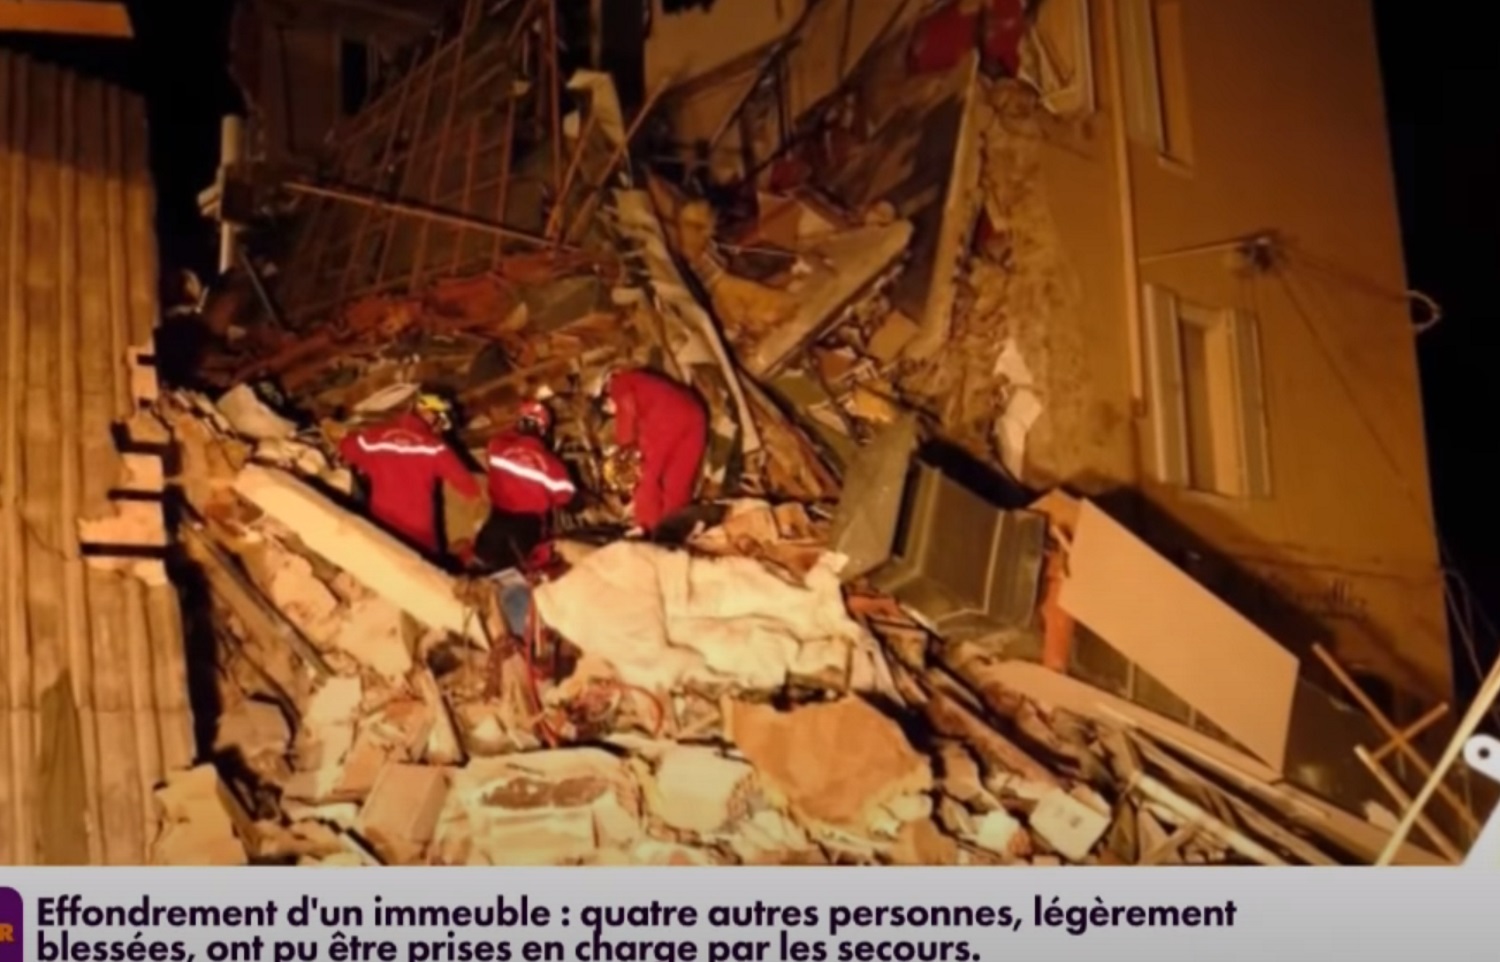 Γαλλία: Κατέρρευσε πολυκατοικία μετά από έκρηξη! Τρεις τραυματίες και έρευνες για εγκλωβισμένους (video)